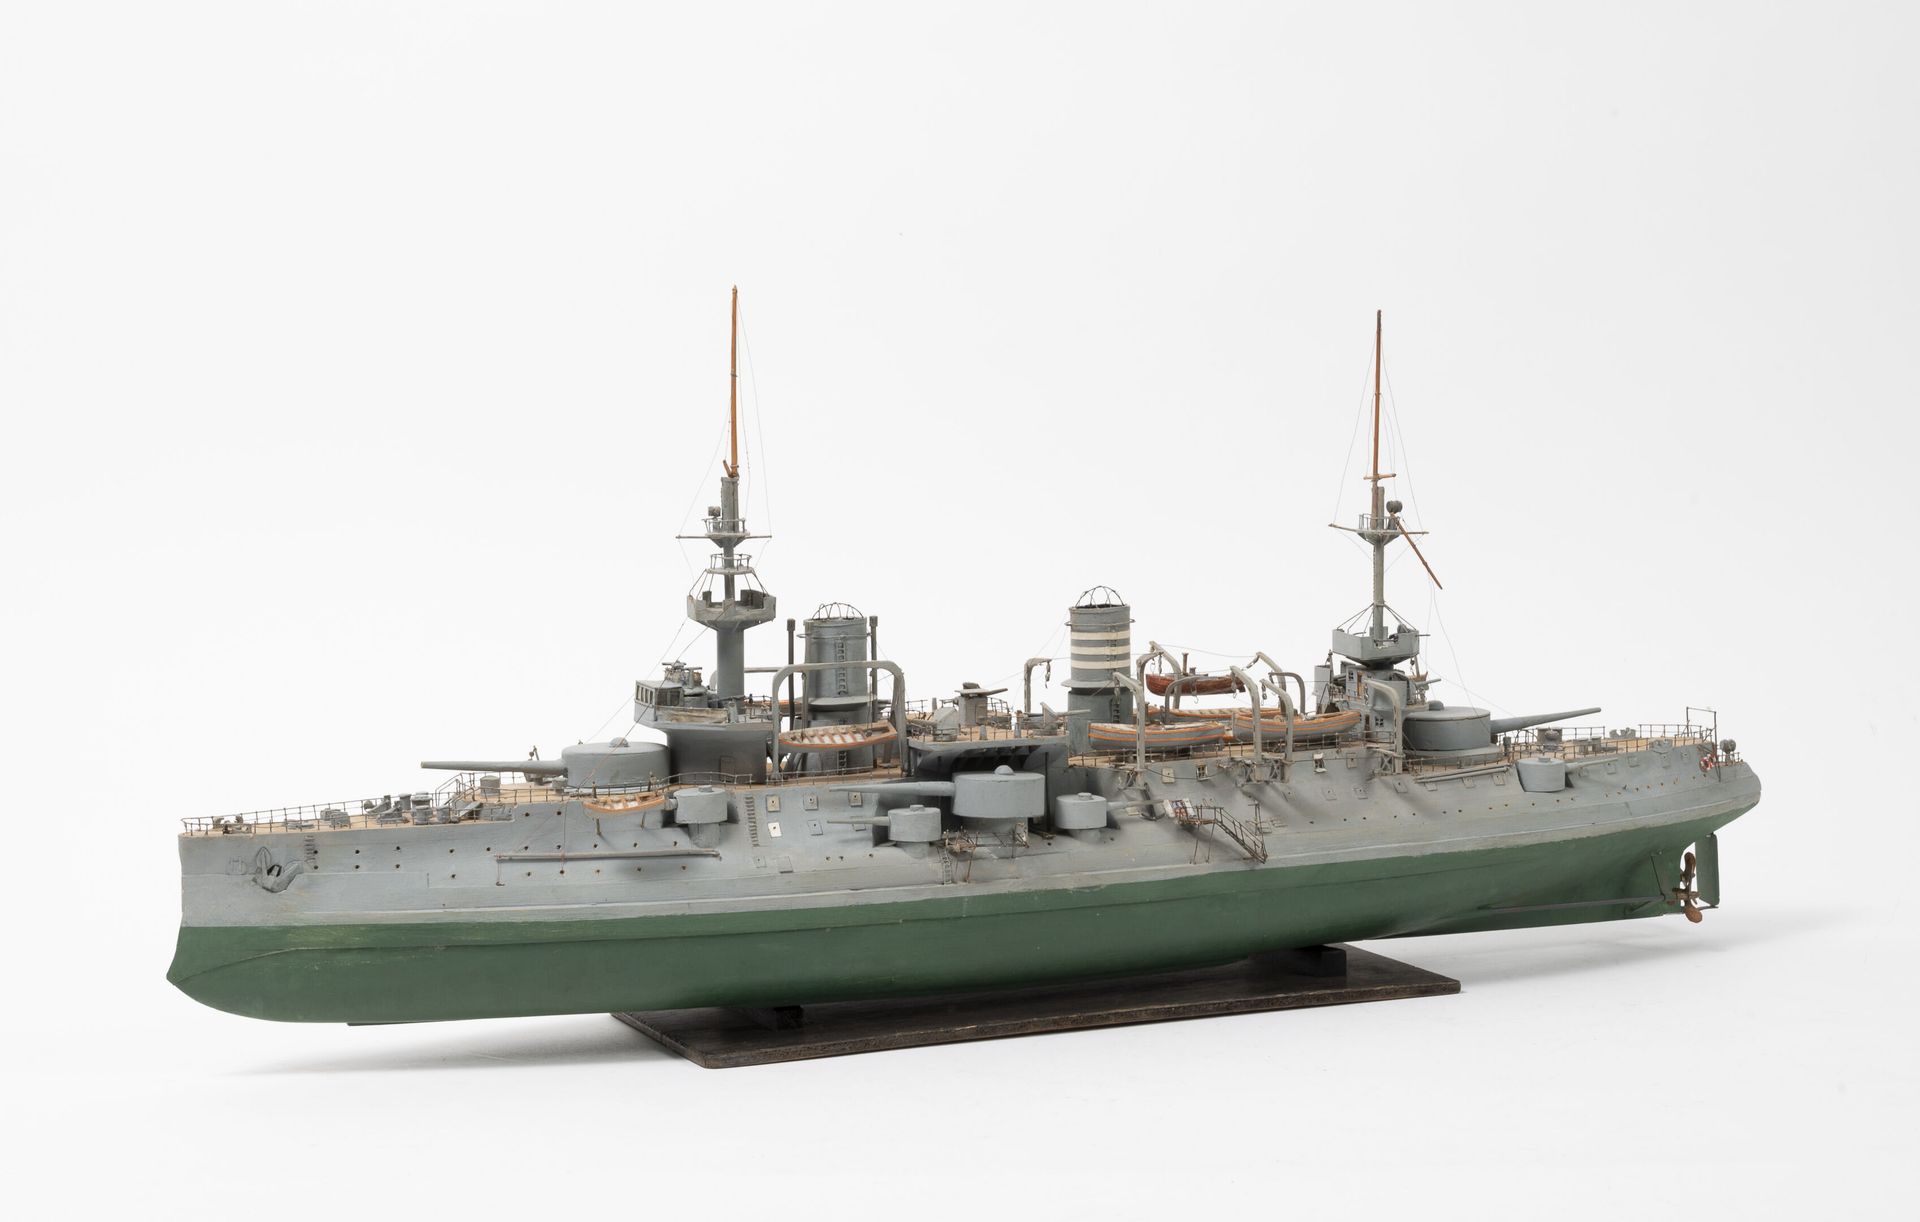 Null 勒布韦号战舰模型。

用木头和喷漆的金属。

比例为1/200。

木质底座。

H.24.5厘米-25厘米长。

事故和零件丢失。